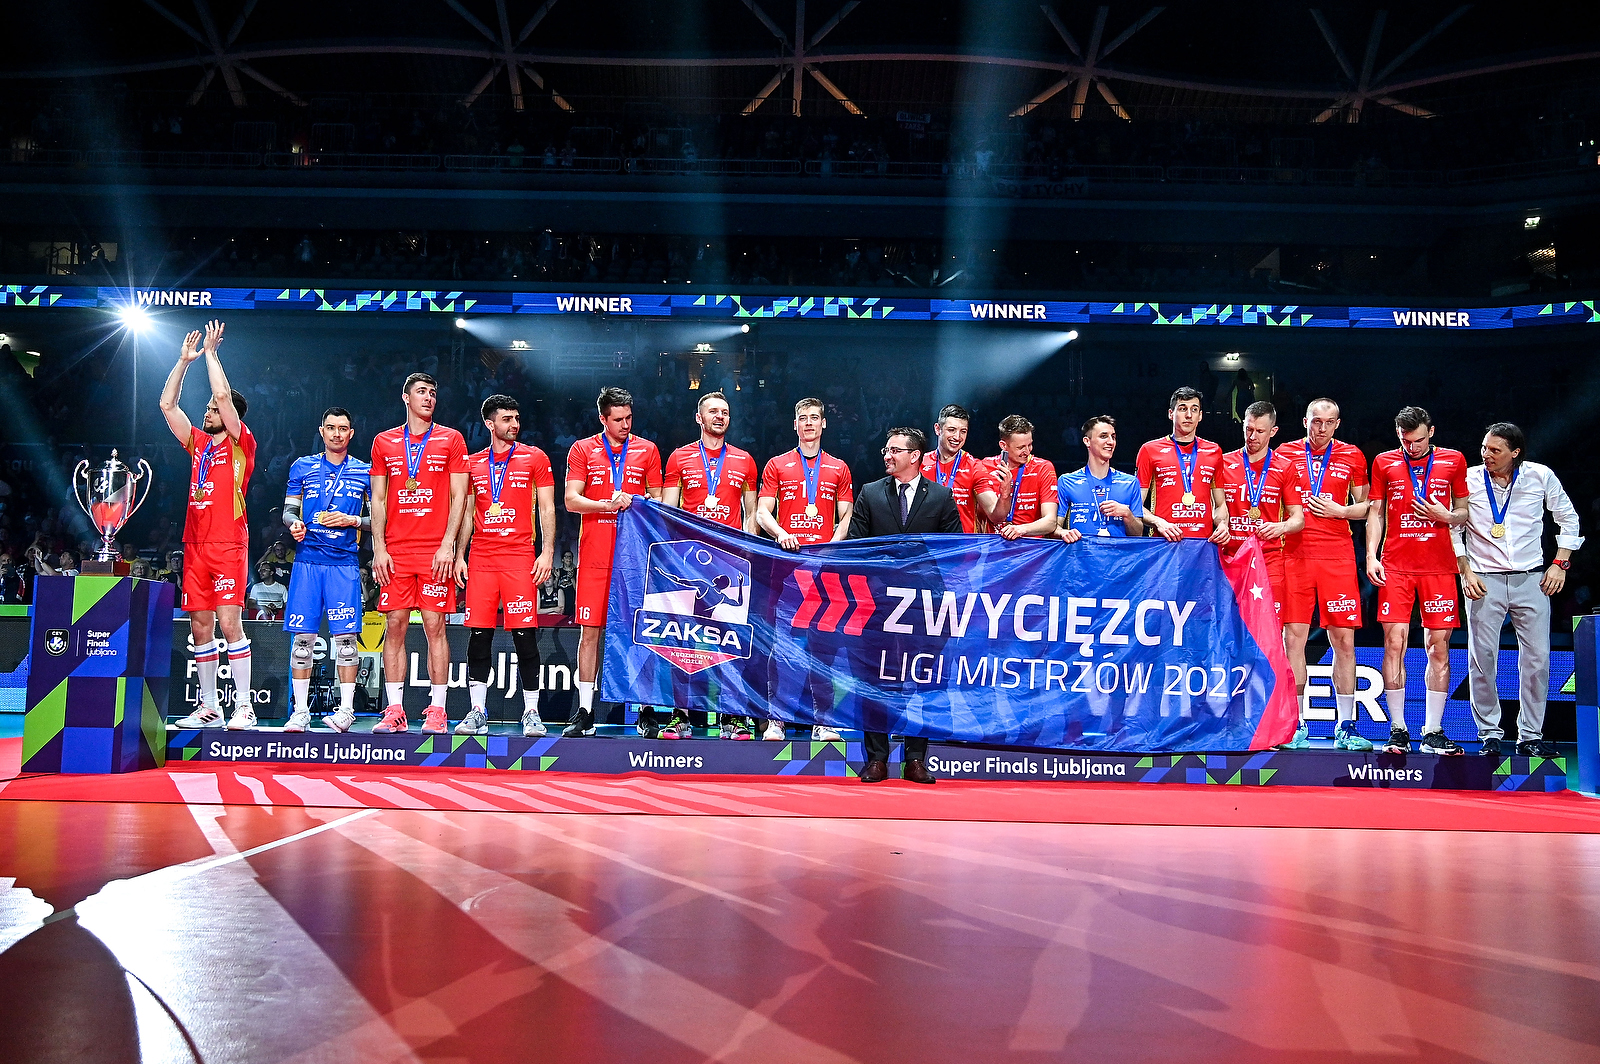 SUPER FINALS LJUBLJANA 2022| Zwycięzca Ligi Mistrzów!